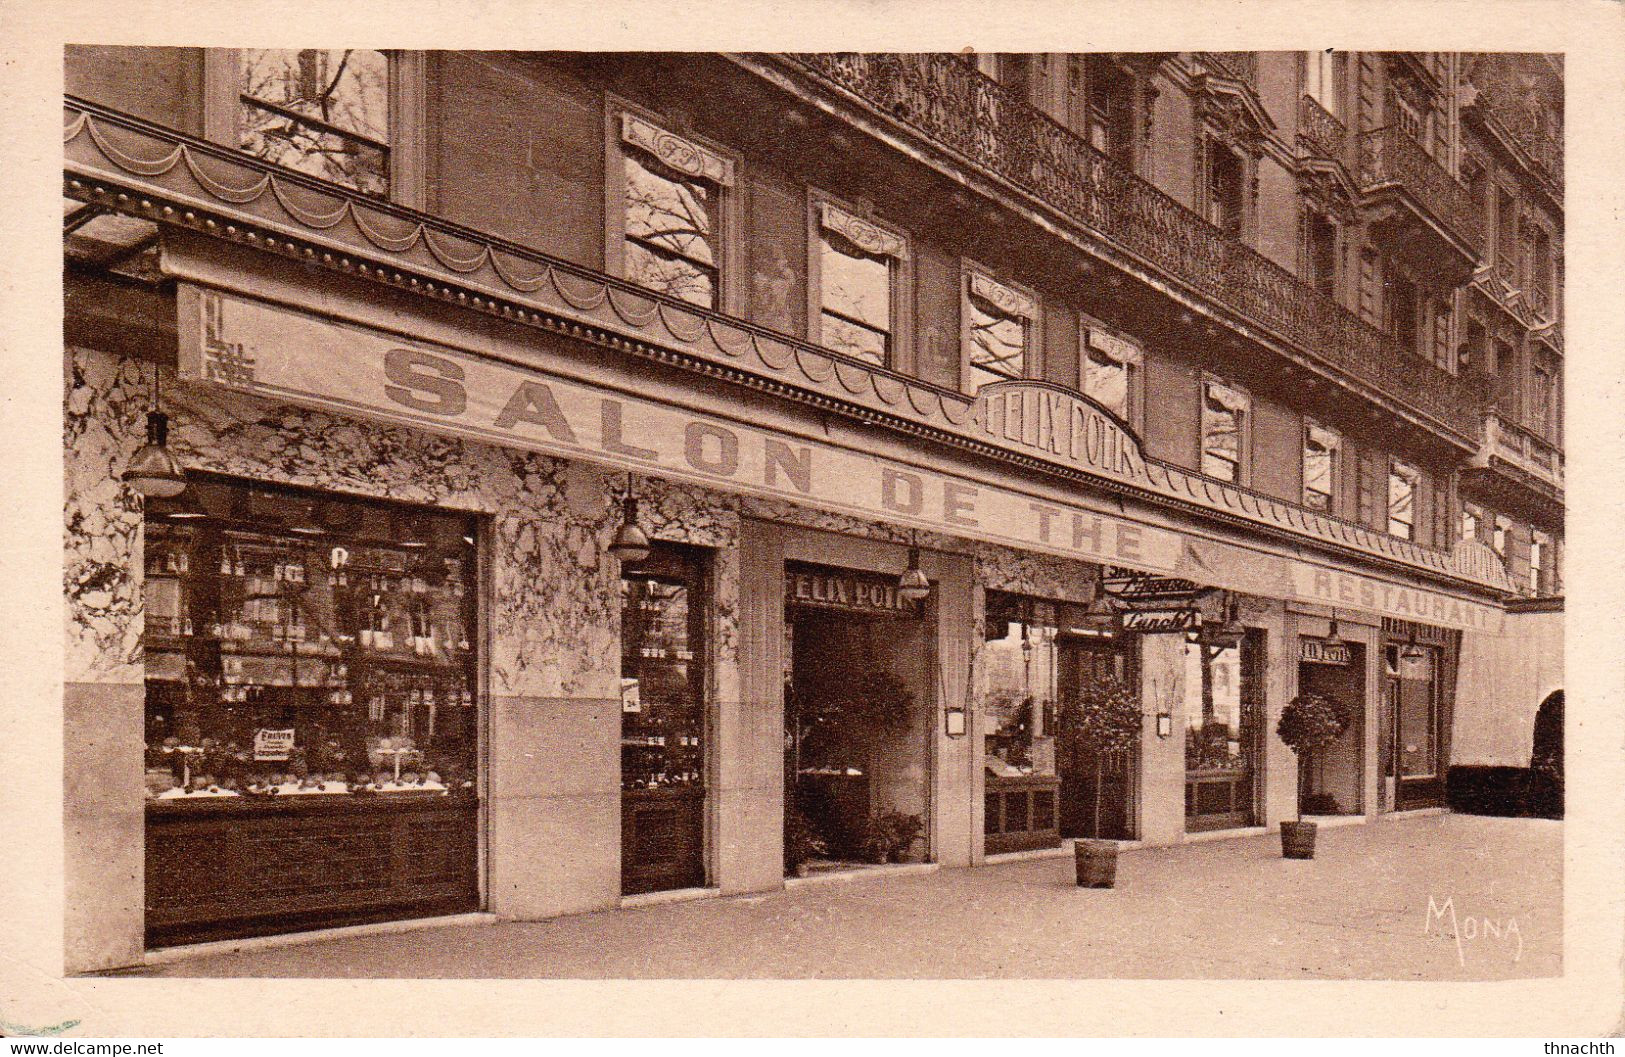 PARIS (Seine) - Restaurant, Salon De Thé, Bar "Saint-Augustin" - 43 Boulevard Malesherbes - Cafés, Hoteles, Restaurantes